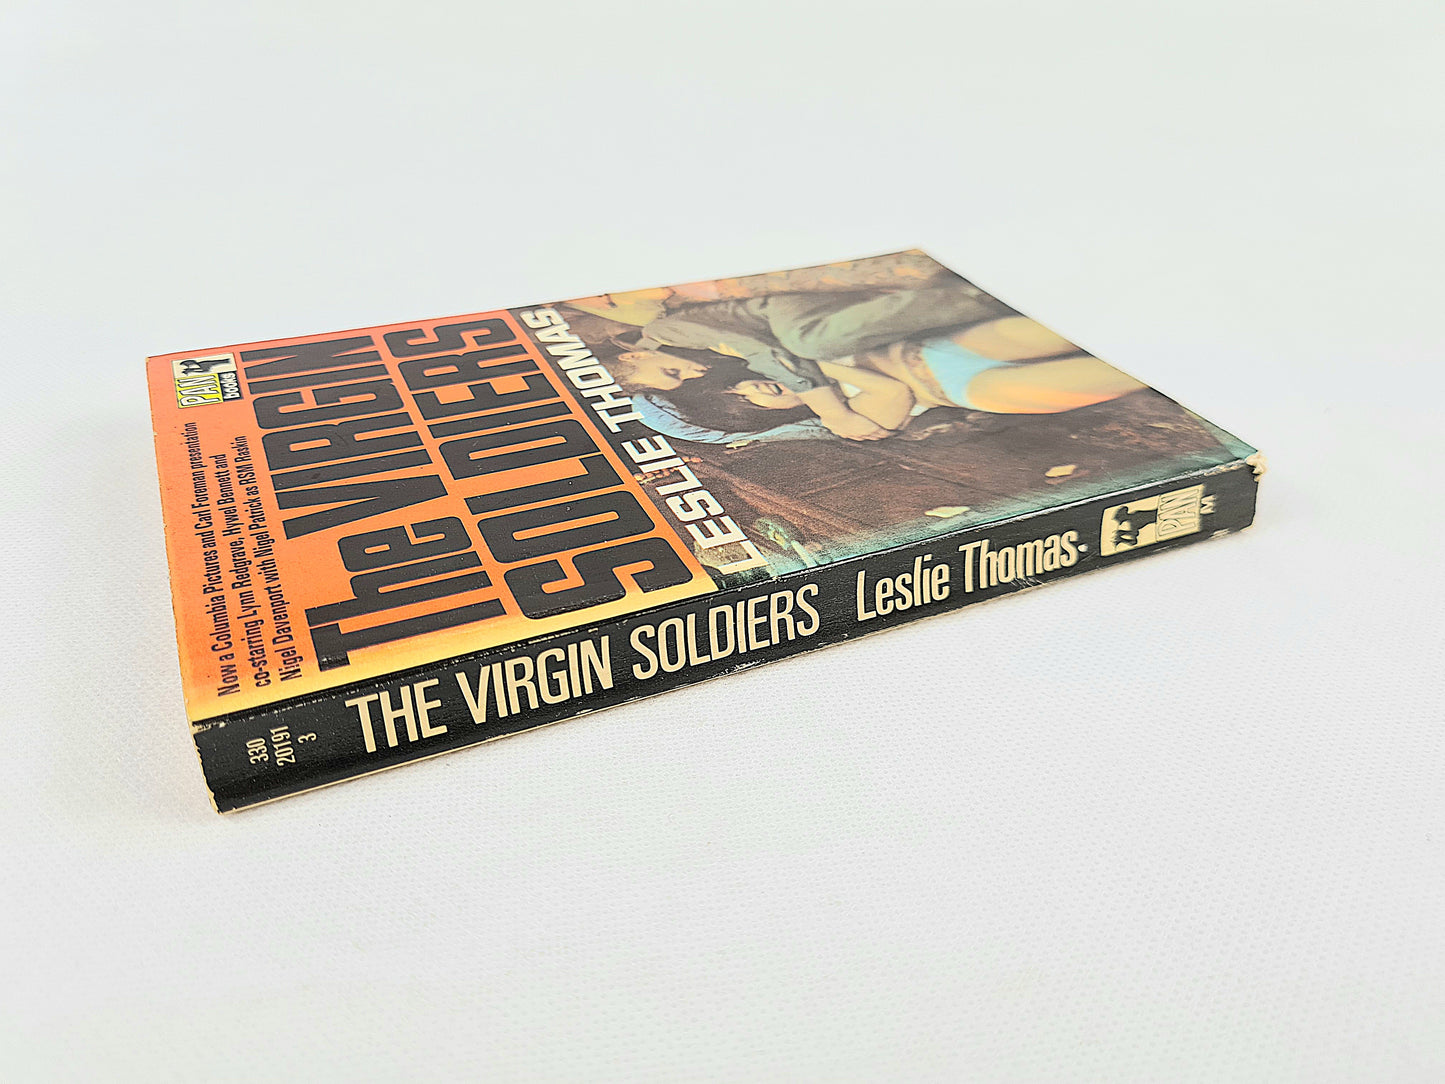 The Virgin Soldiers by Leslie Thomas. Vintage Paperbacks. Pan book